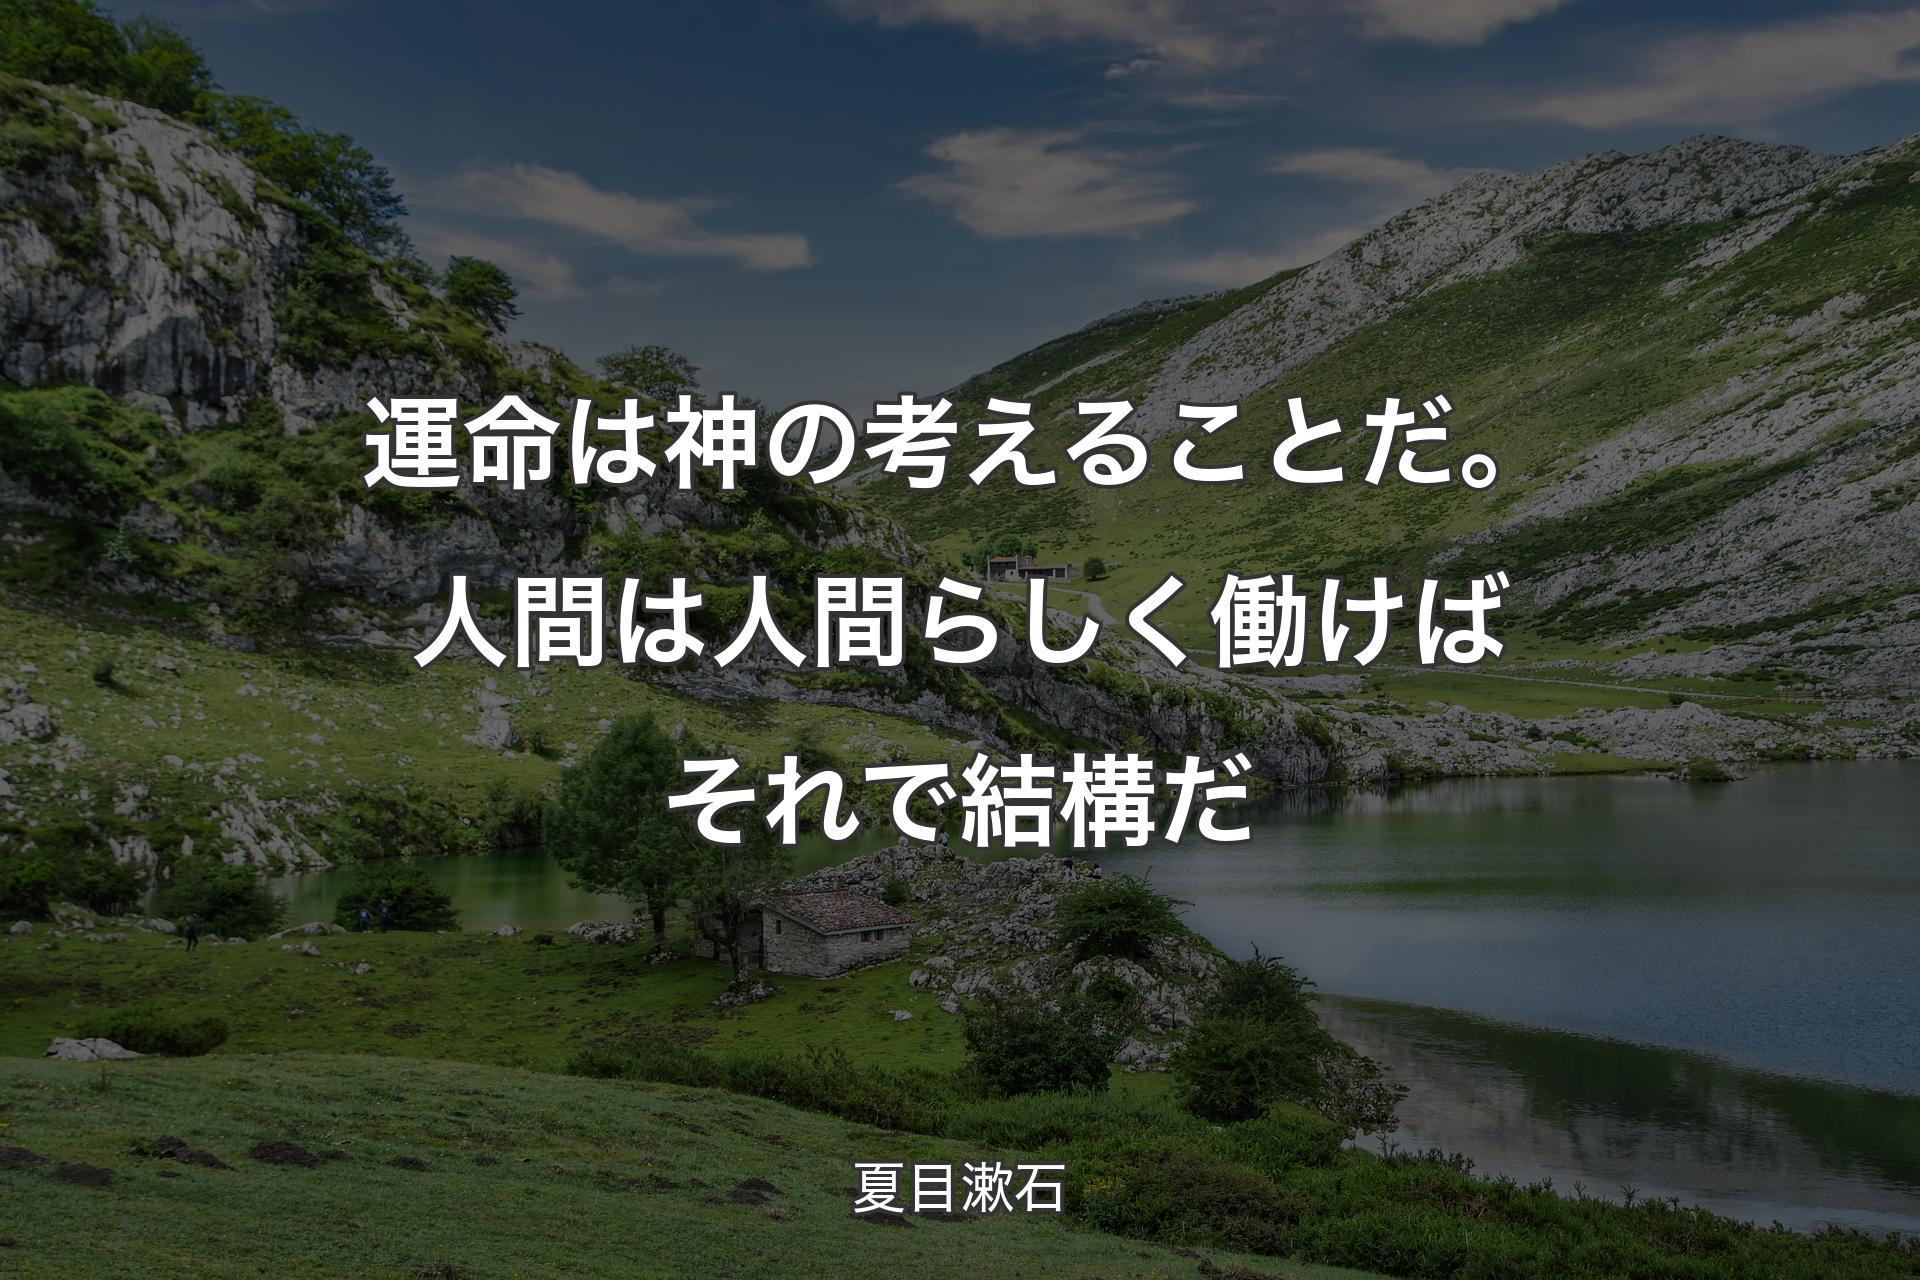 【背景1】運命は神の考えることだ。 人間は人間らしく働けば それで結構だ - 夏目漱石